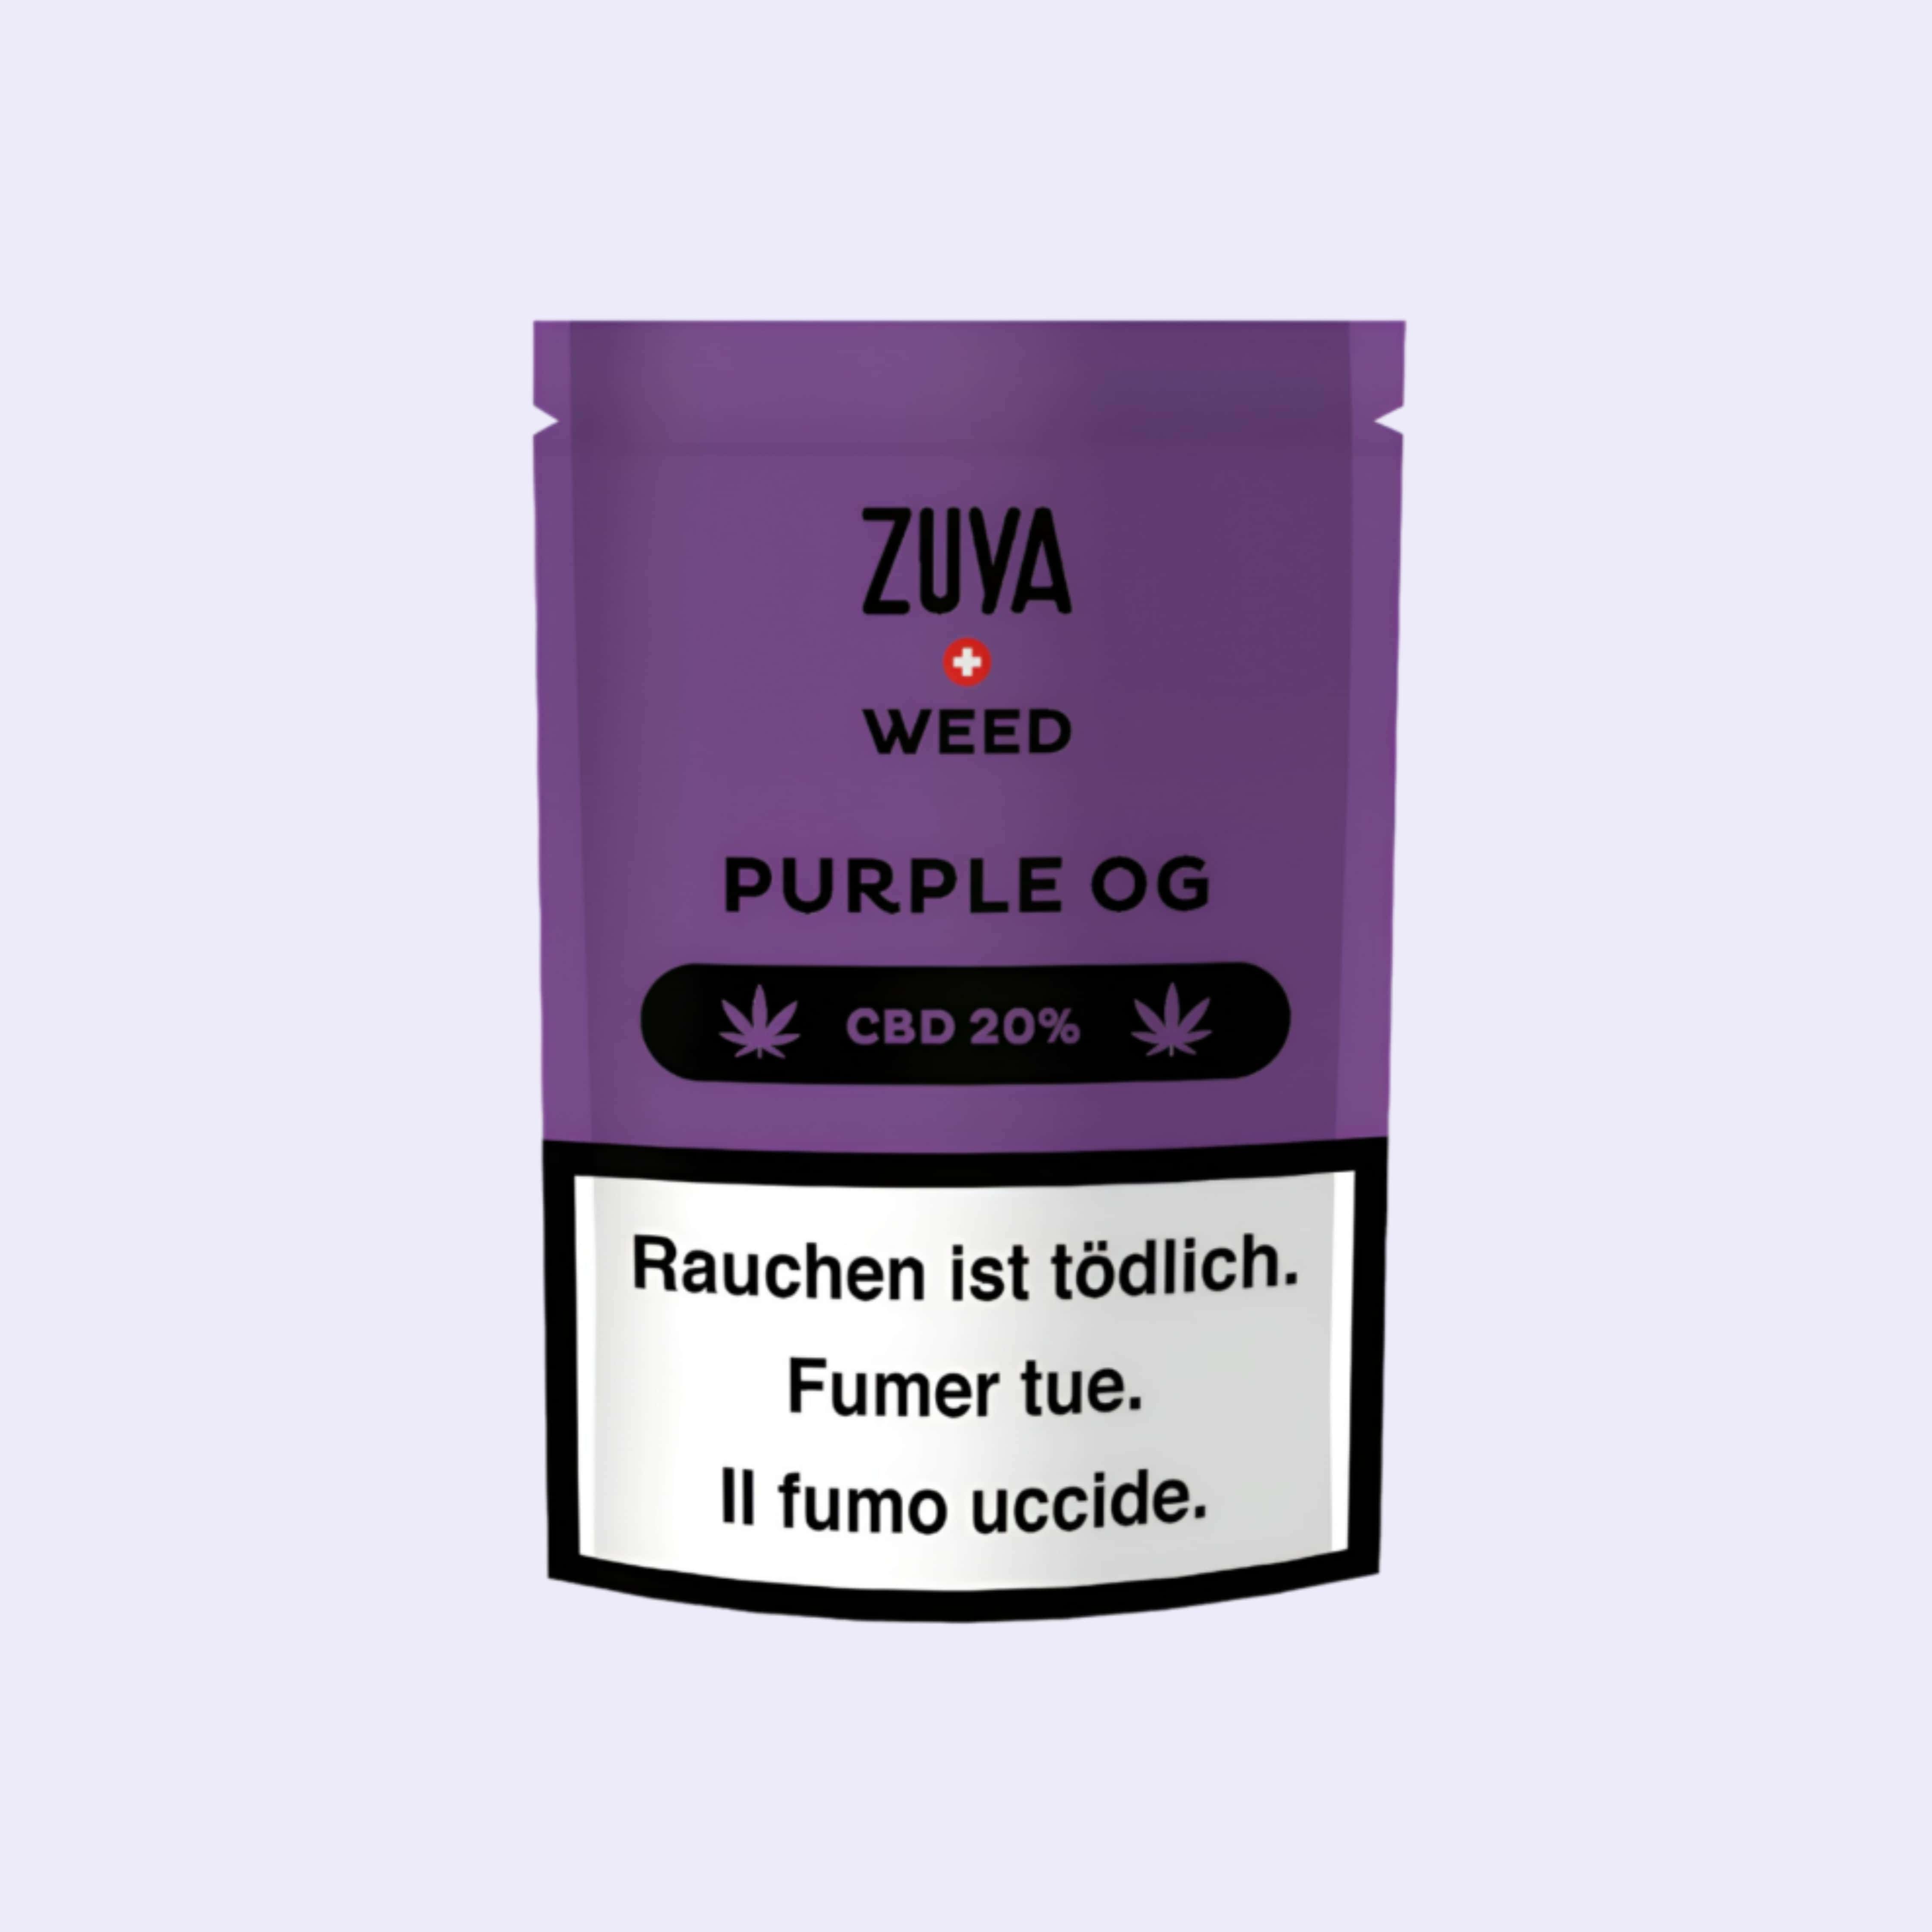 Dieses Bild zeigt die Indoor CBD Blüten Purple OG von der Firma Zuya Weed